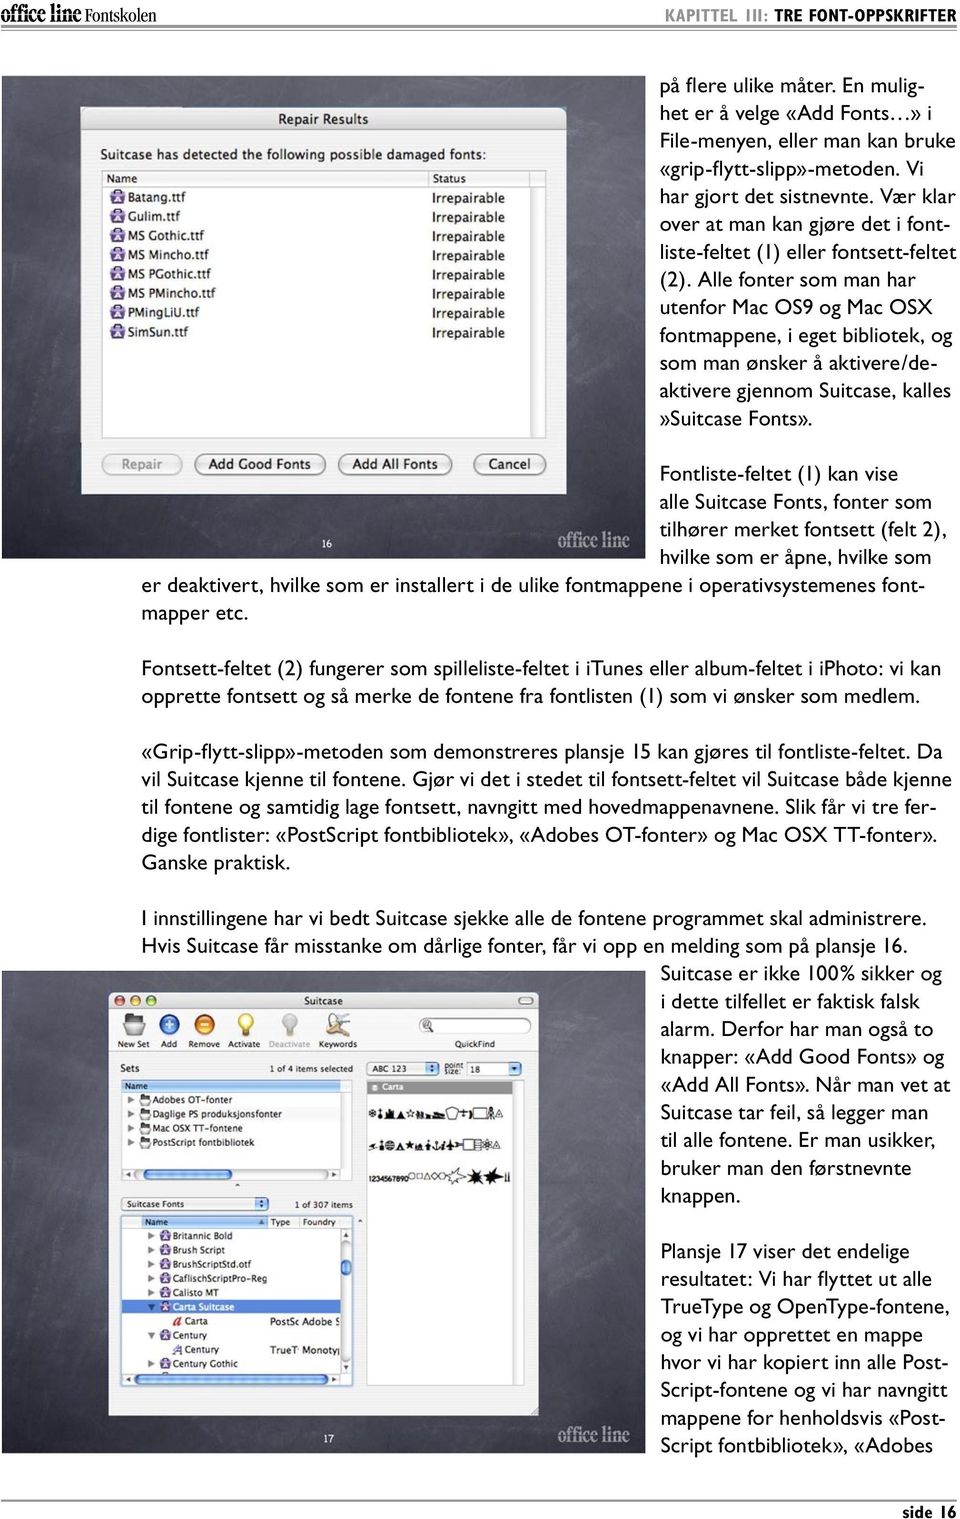 Alle fonter som man har utenfor Mac OS9 og Mac OSX fontmappene, i eget bibliotek, og som man ønsker å aktivere/deaktivere gjennom Suitcase, kalles»suitcase Fonts».